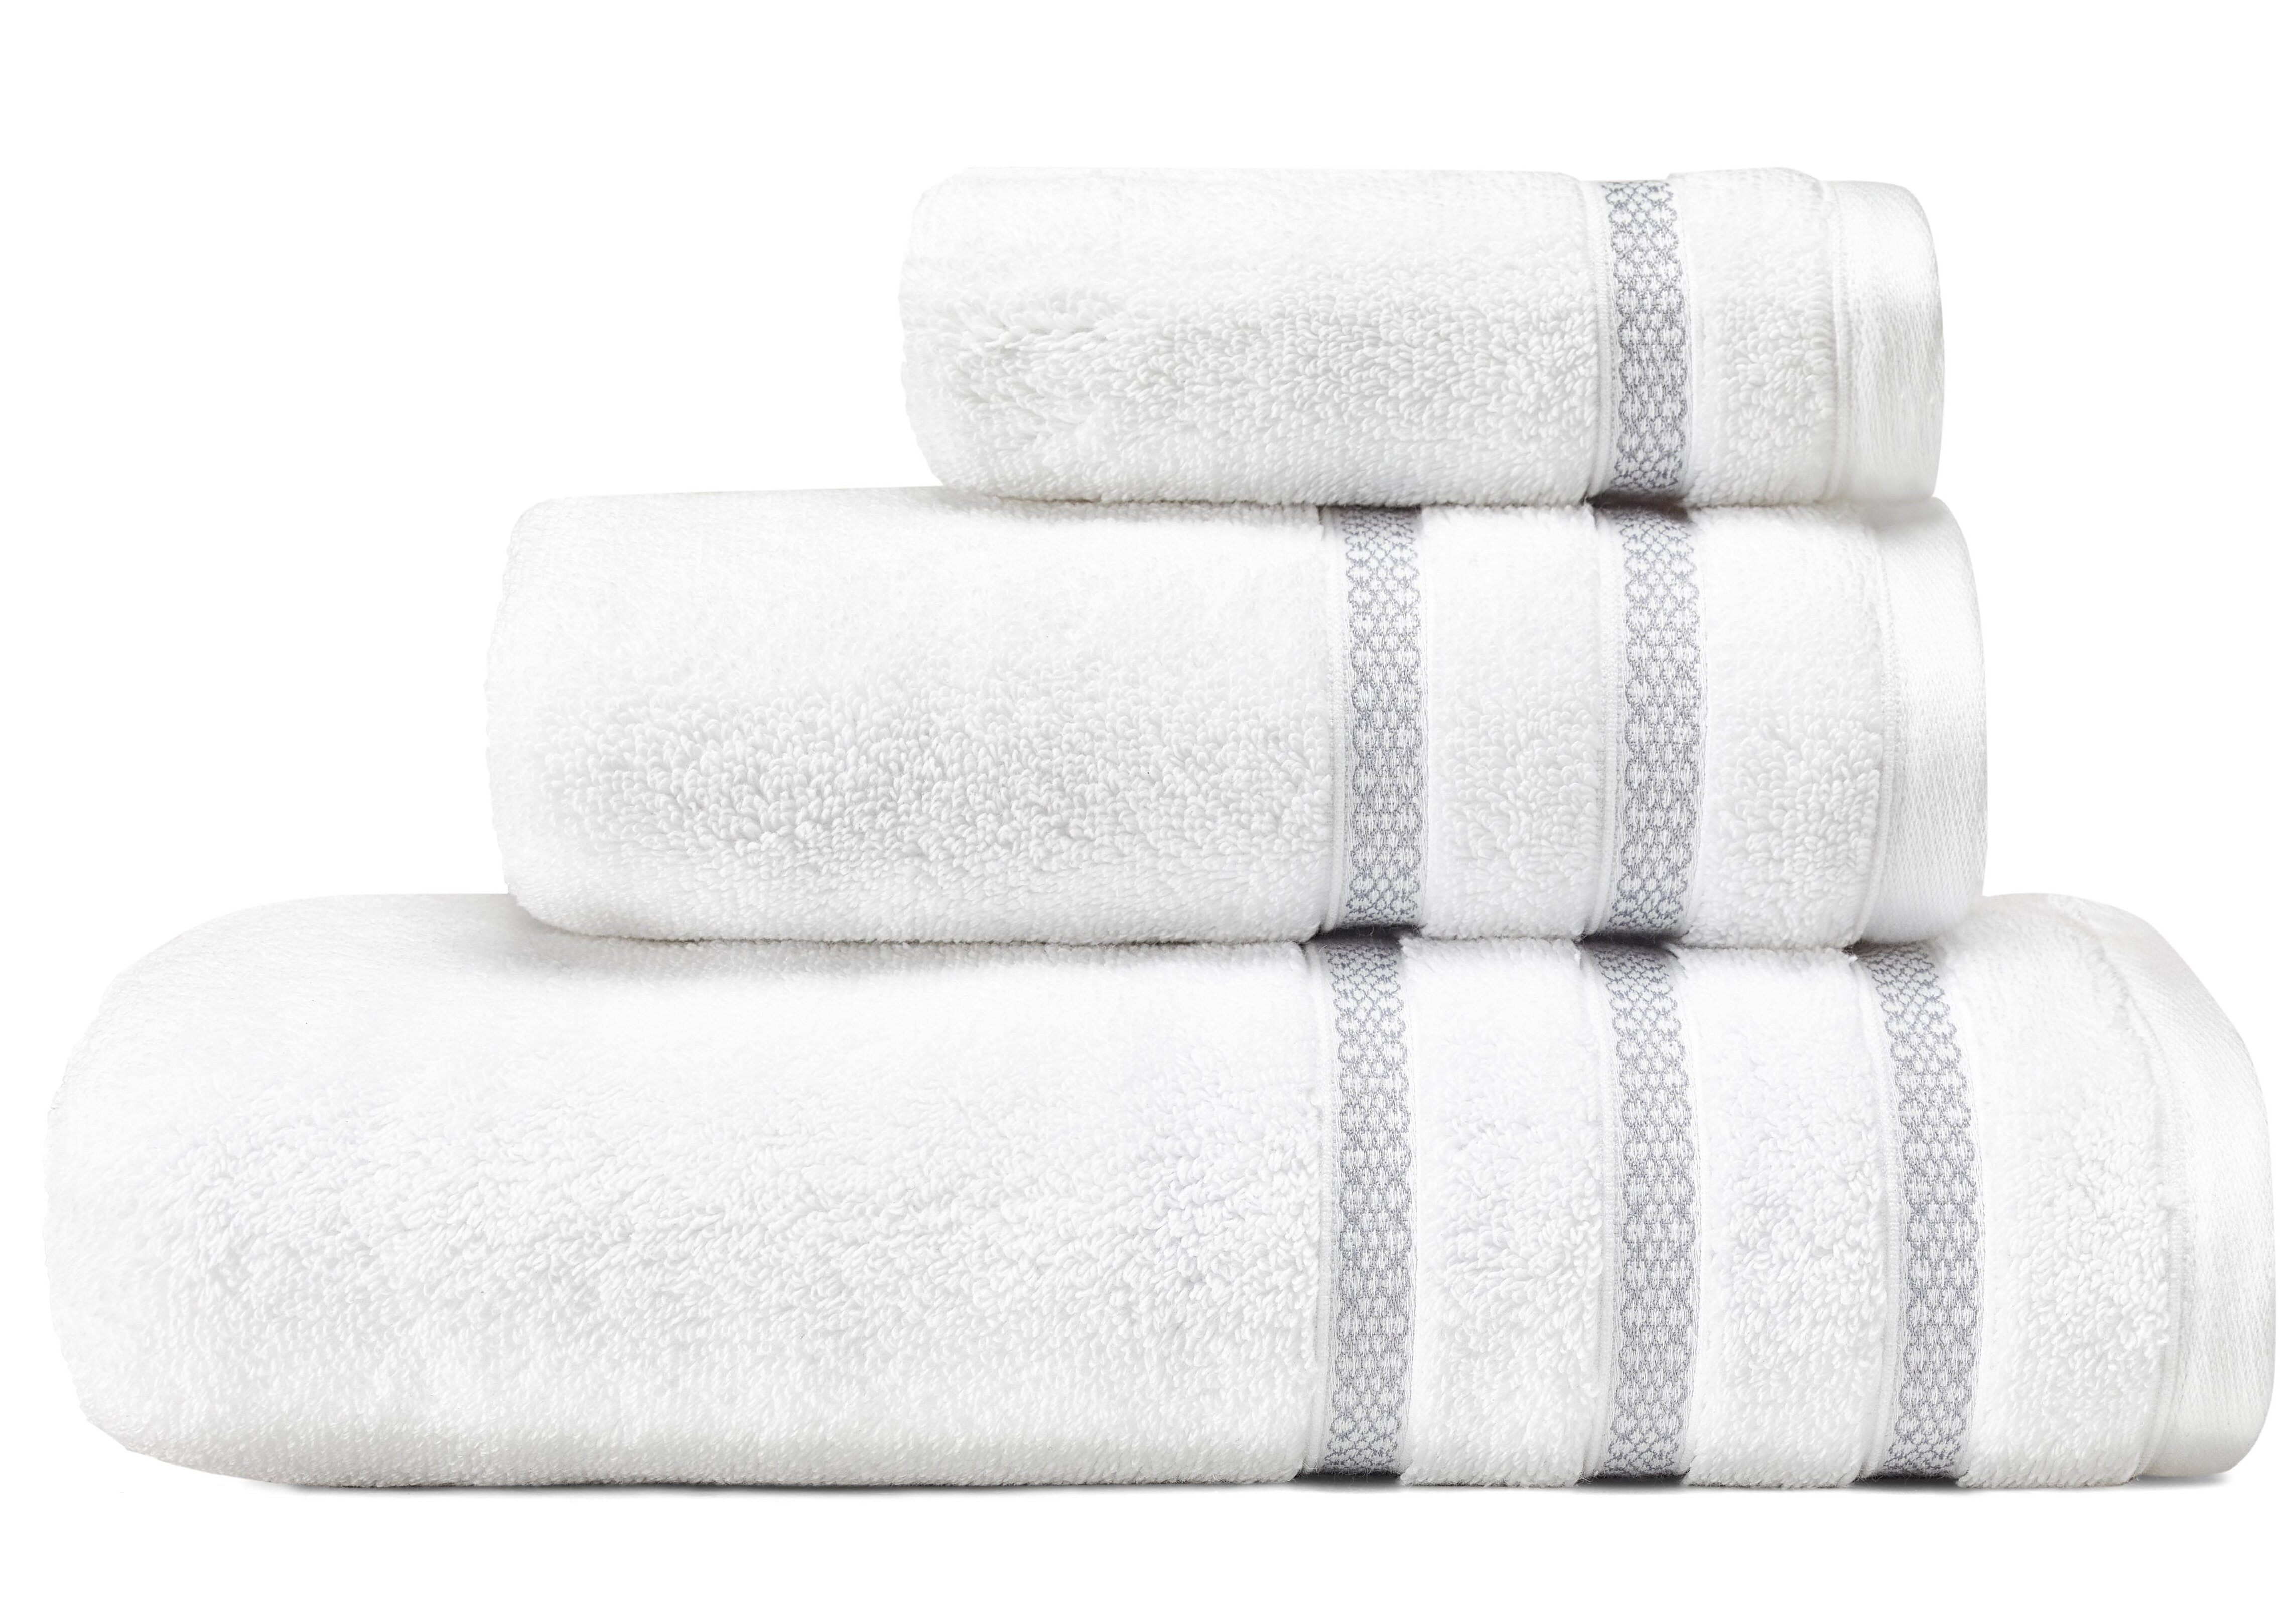 https://assets.wfcdn.com/im/55788702/compr-r85/7472/74724730/textured-trellis-3-piece-100-cotton-towel-set.jpg